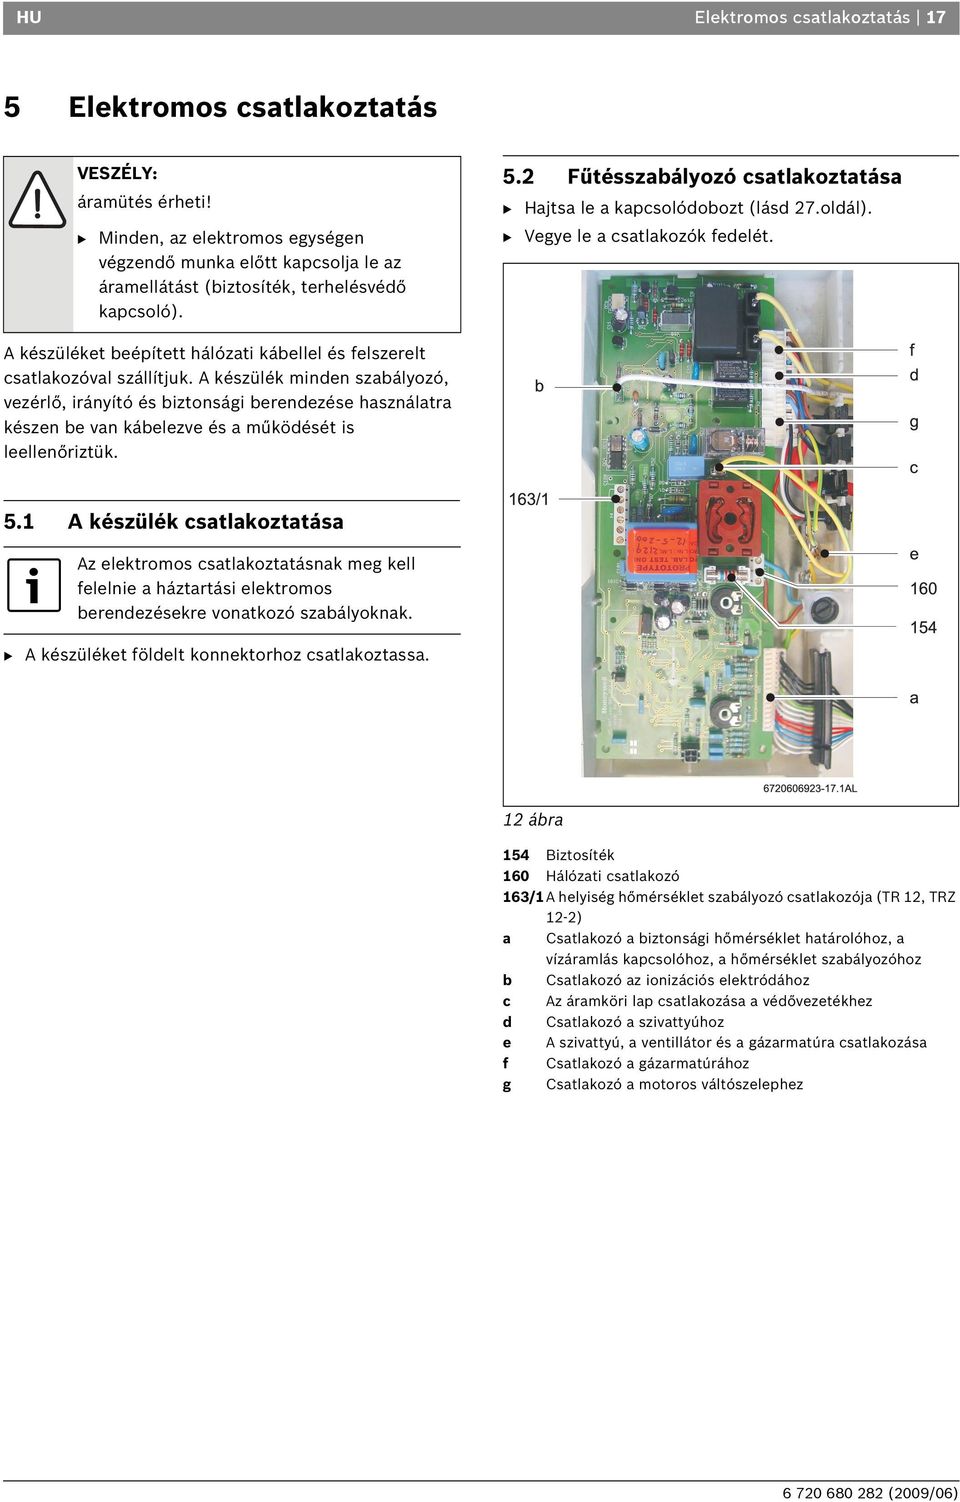 Gázkazán GAZ 3000 W OS/W 23-1 LH KE 23/31. Telepítési és használati  utasítás (2009/06) HU - PDF Ingyenes letöltés